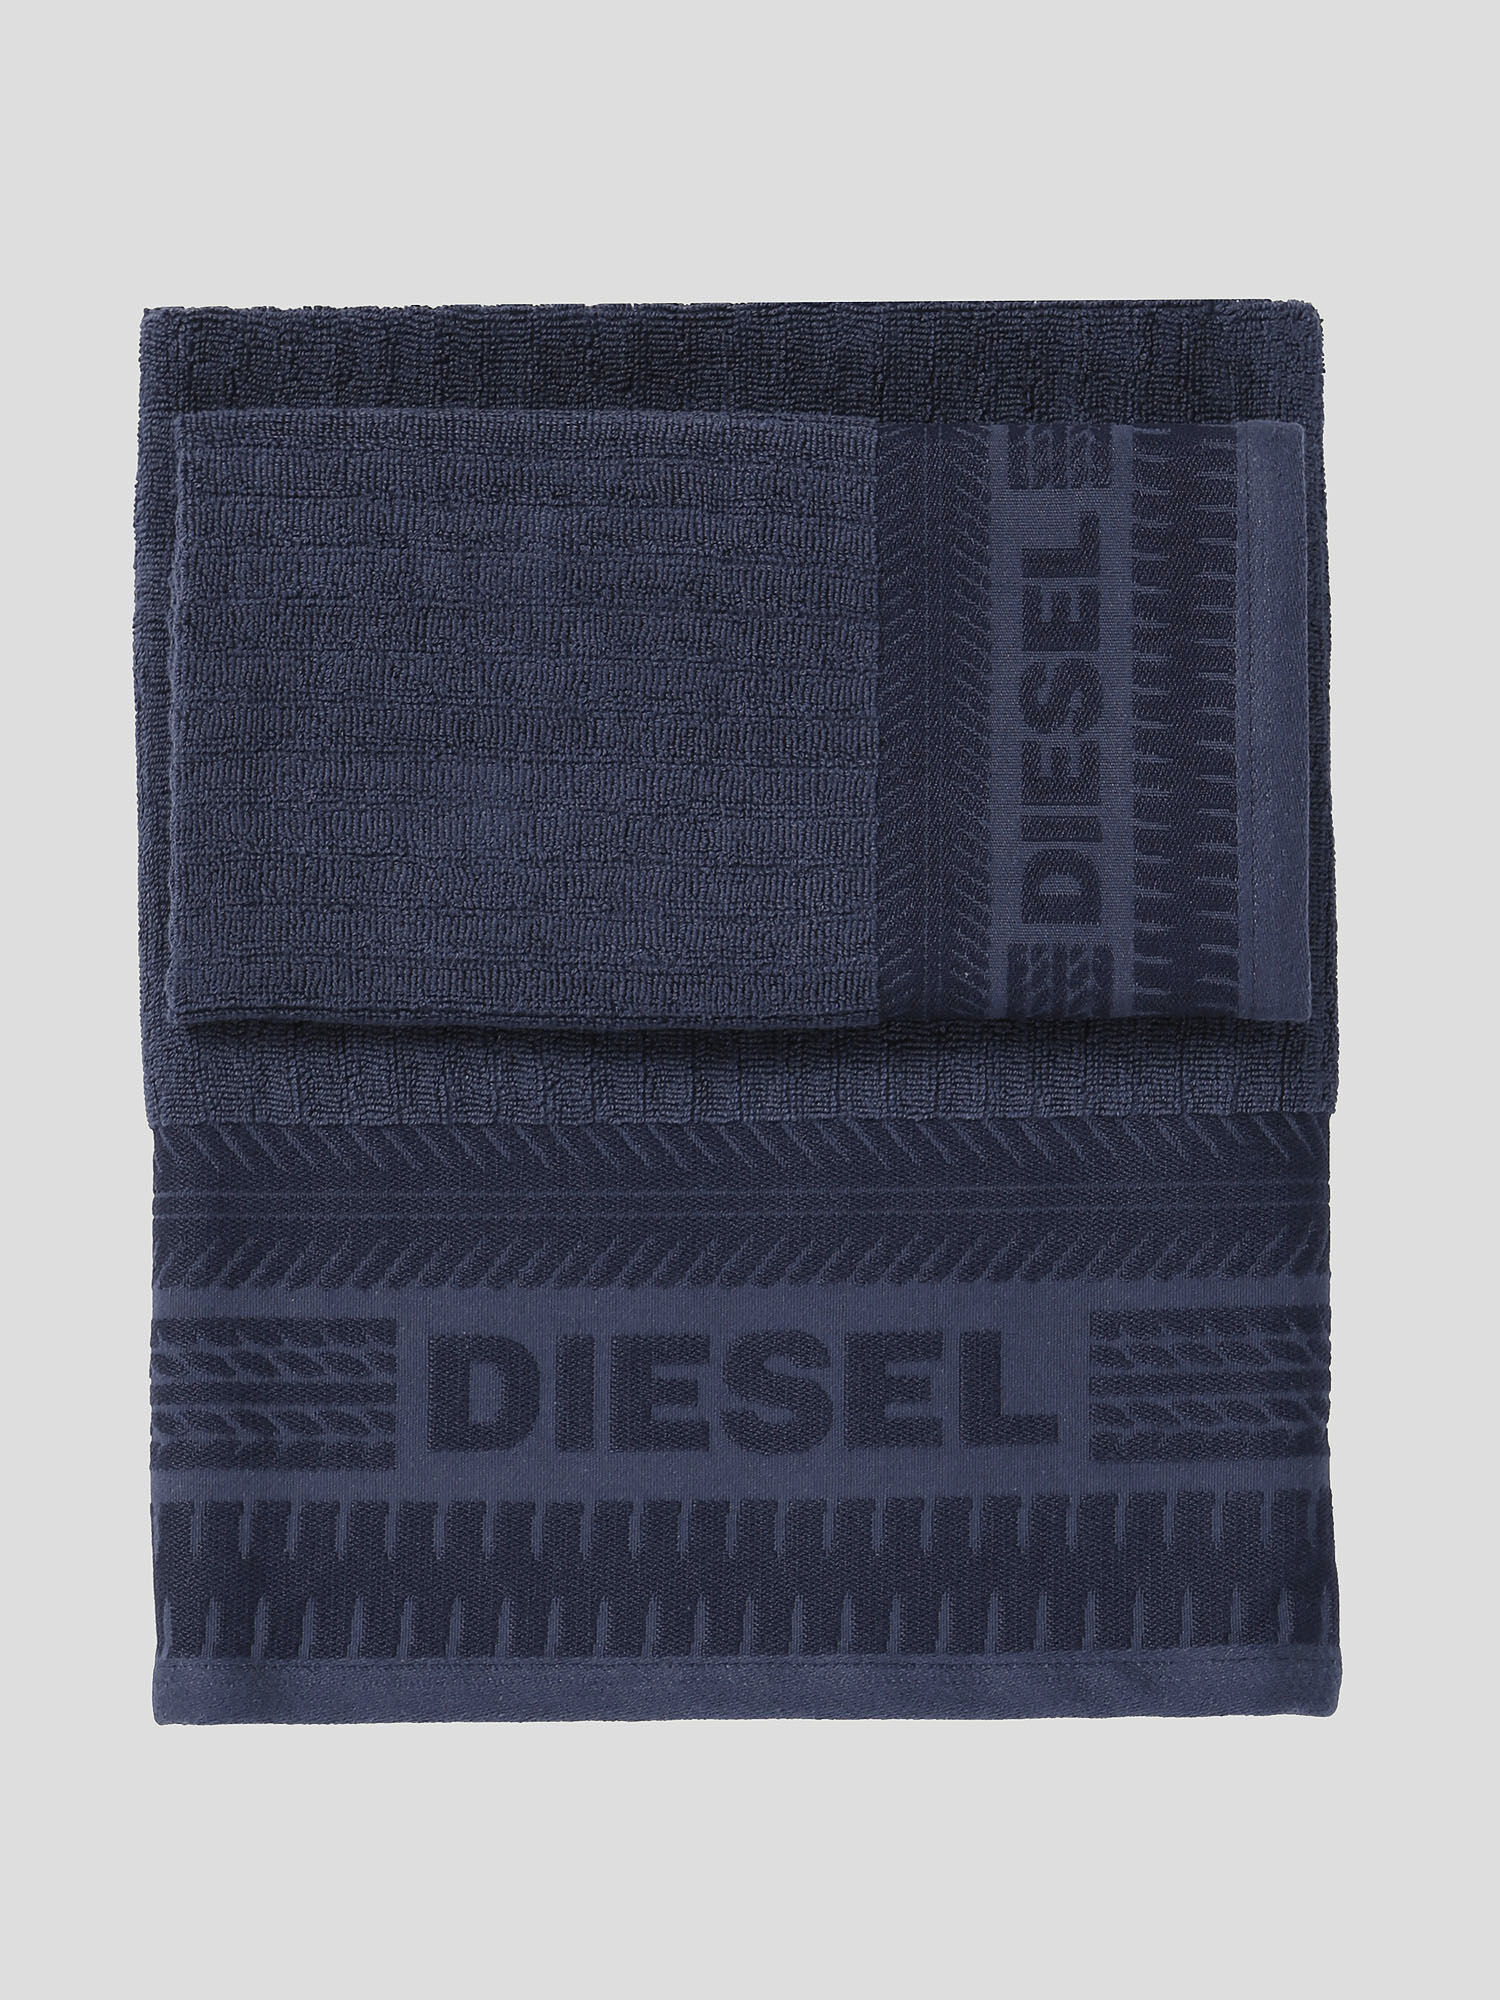 Diesel - 72327 SOLID, Blau - Image 1